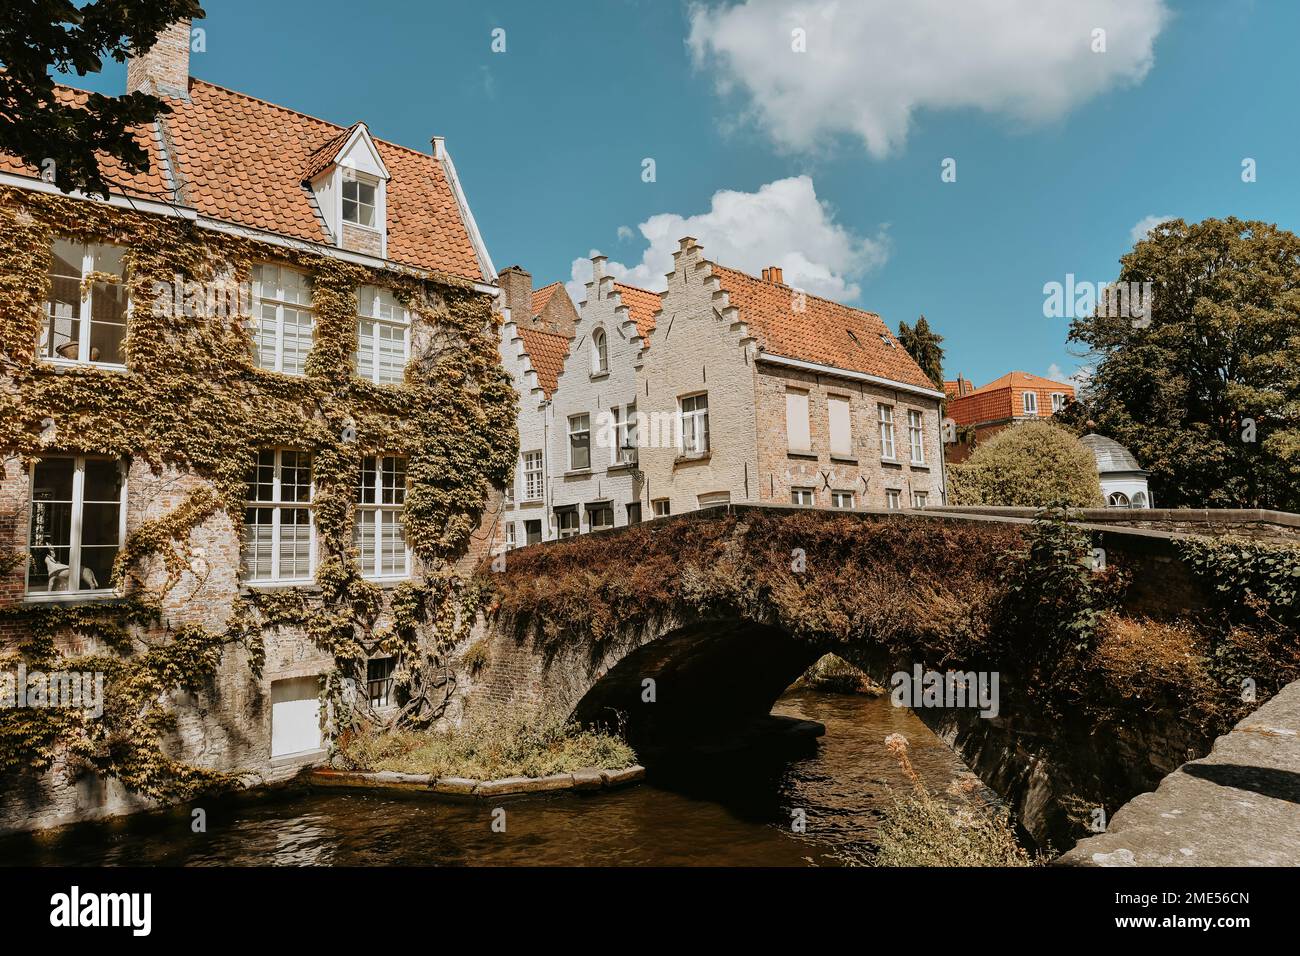 Belgique, Flandre Occidentale, Bruges, Pont de l'ancienne arche sur la rivière de la ville Banque D'Images